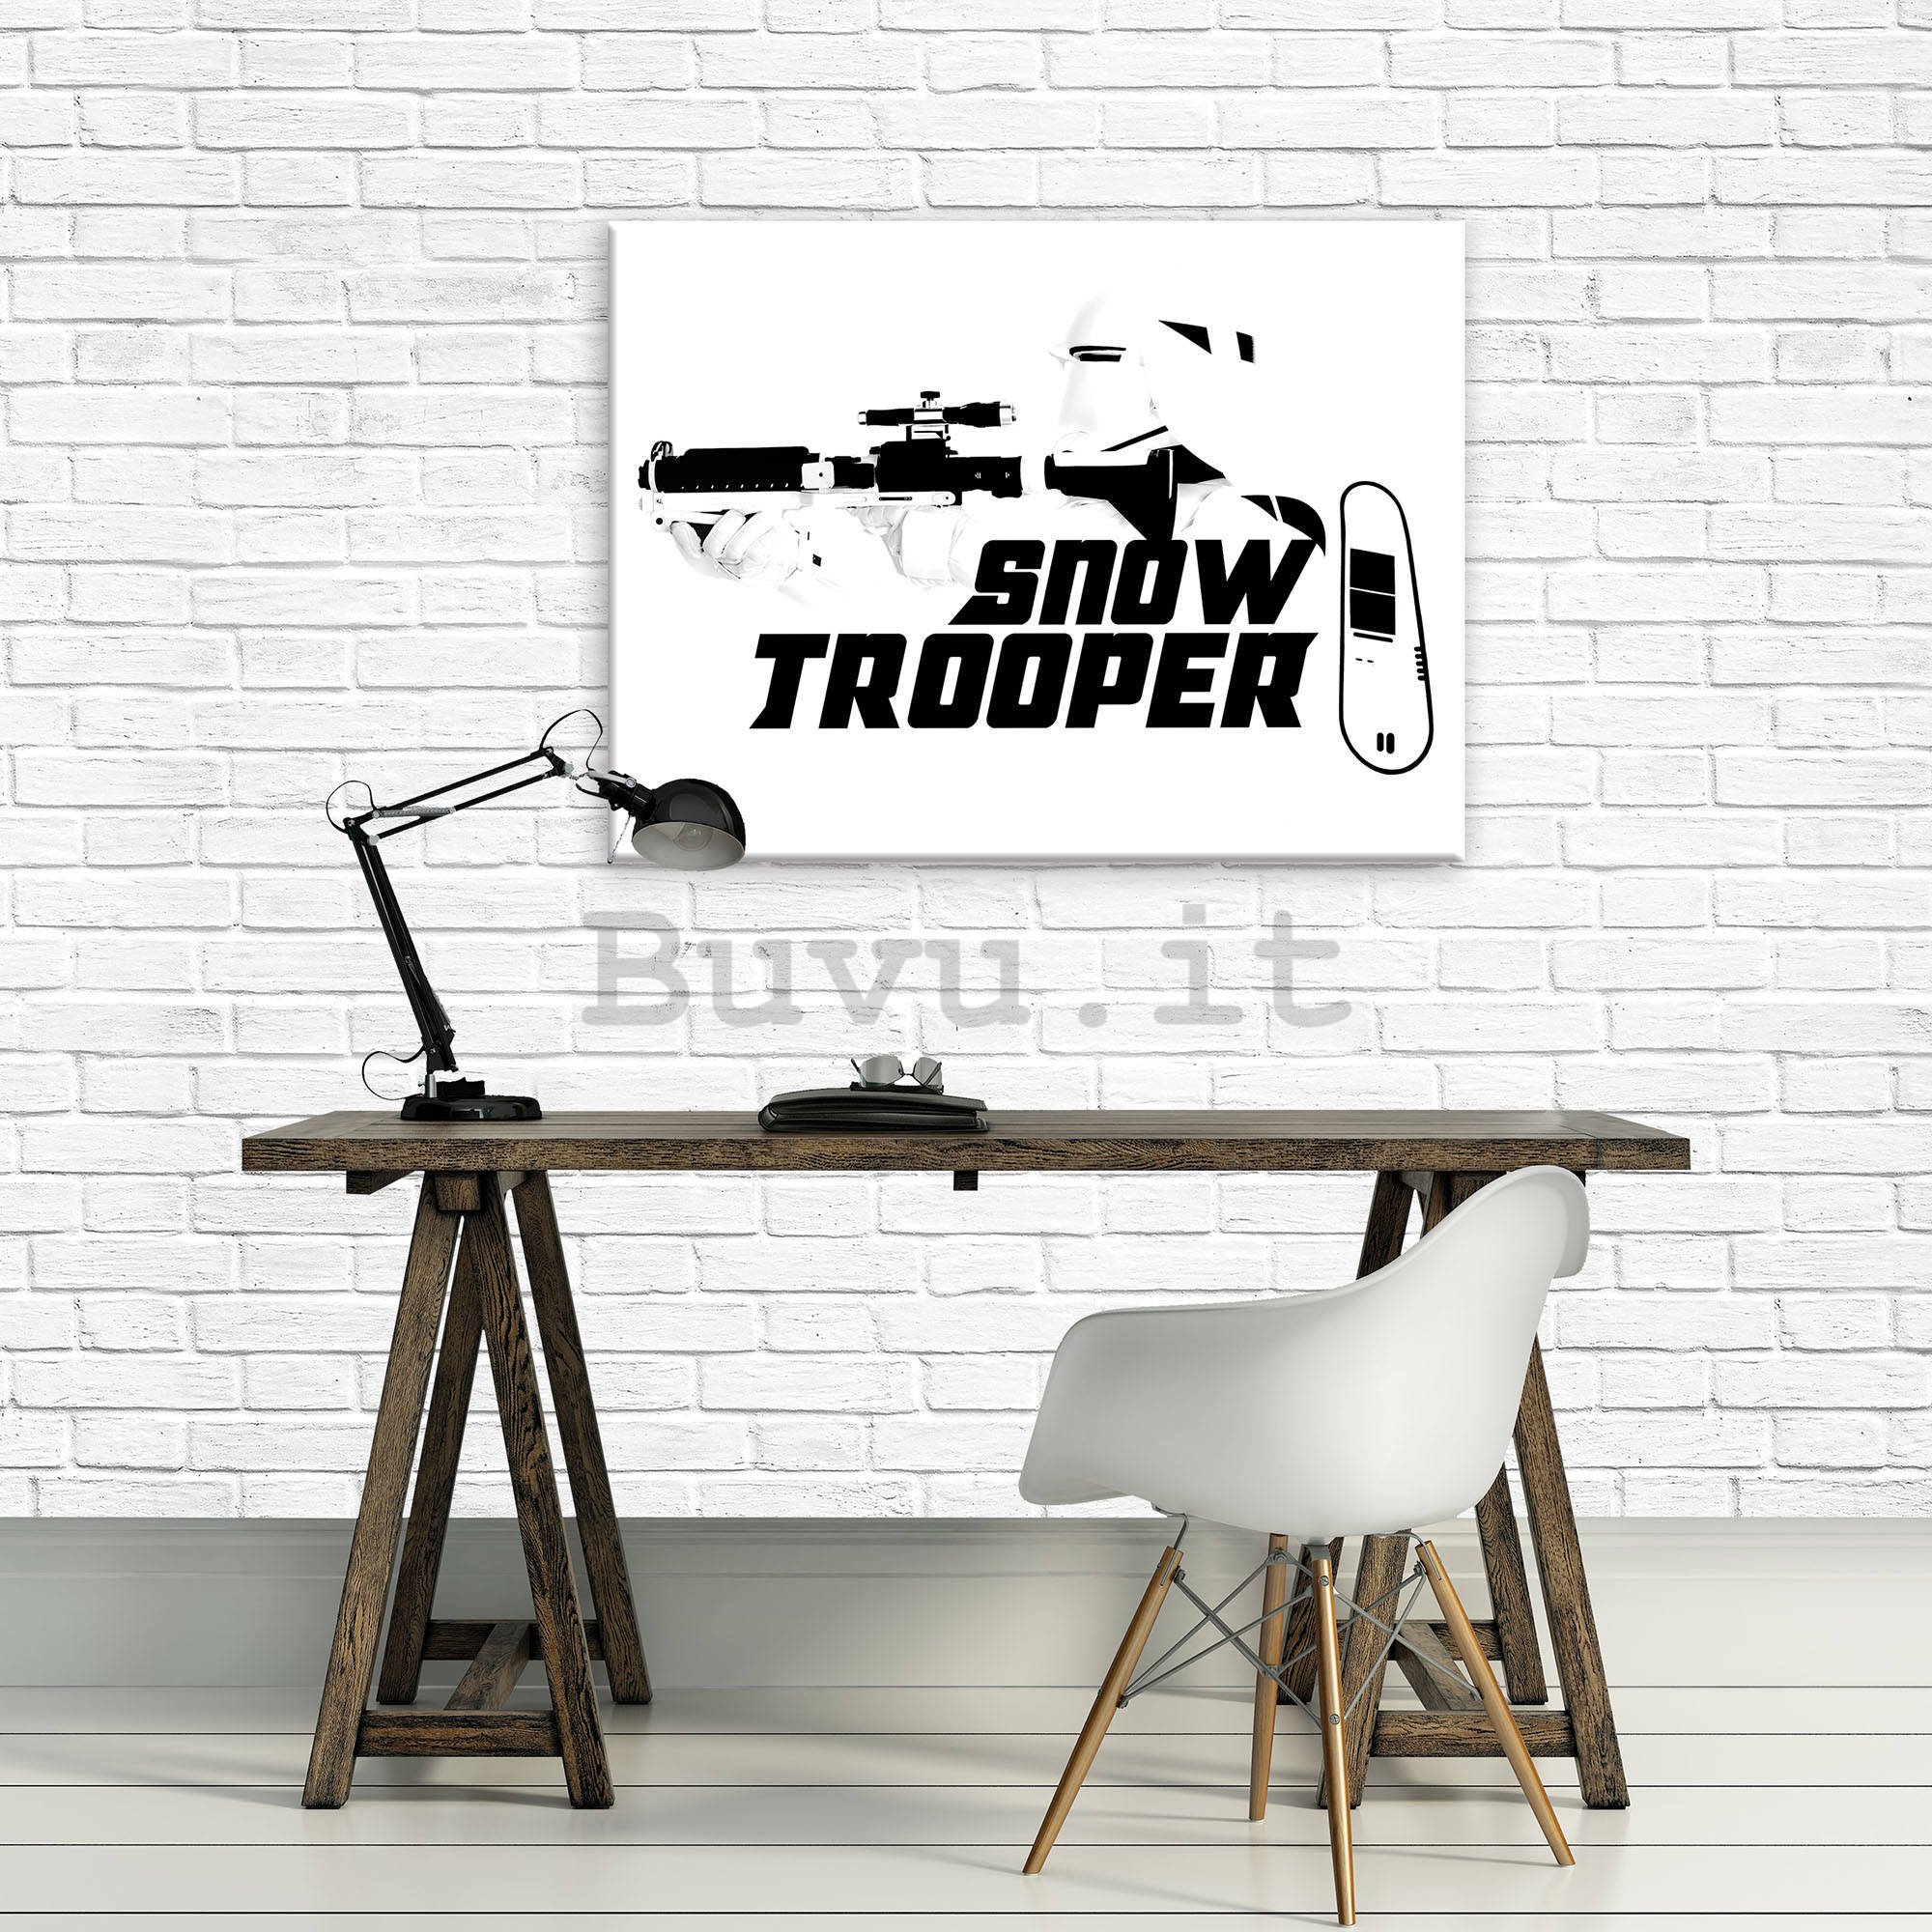 Quadro su tela: Star Wars Snow Trooper - 100x75 cm